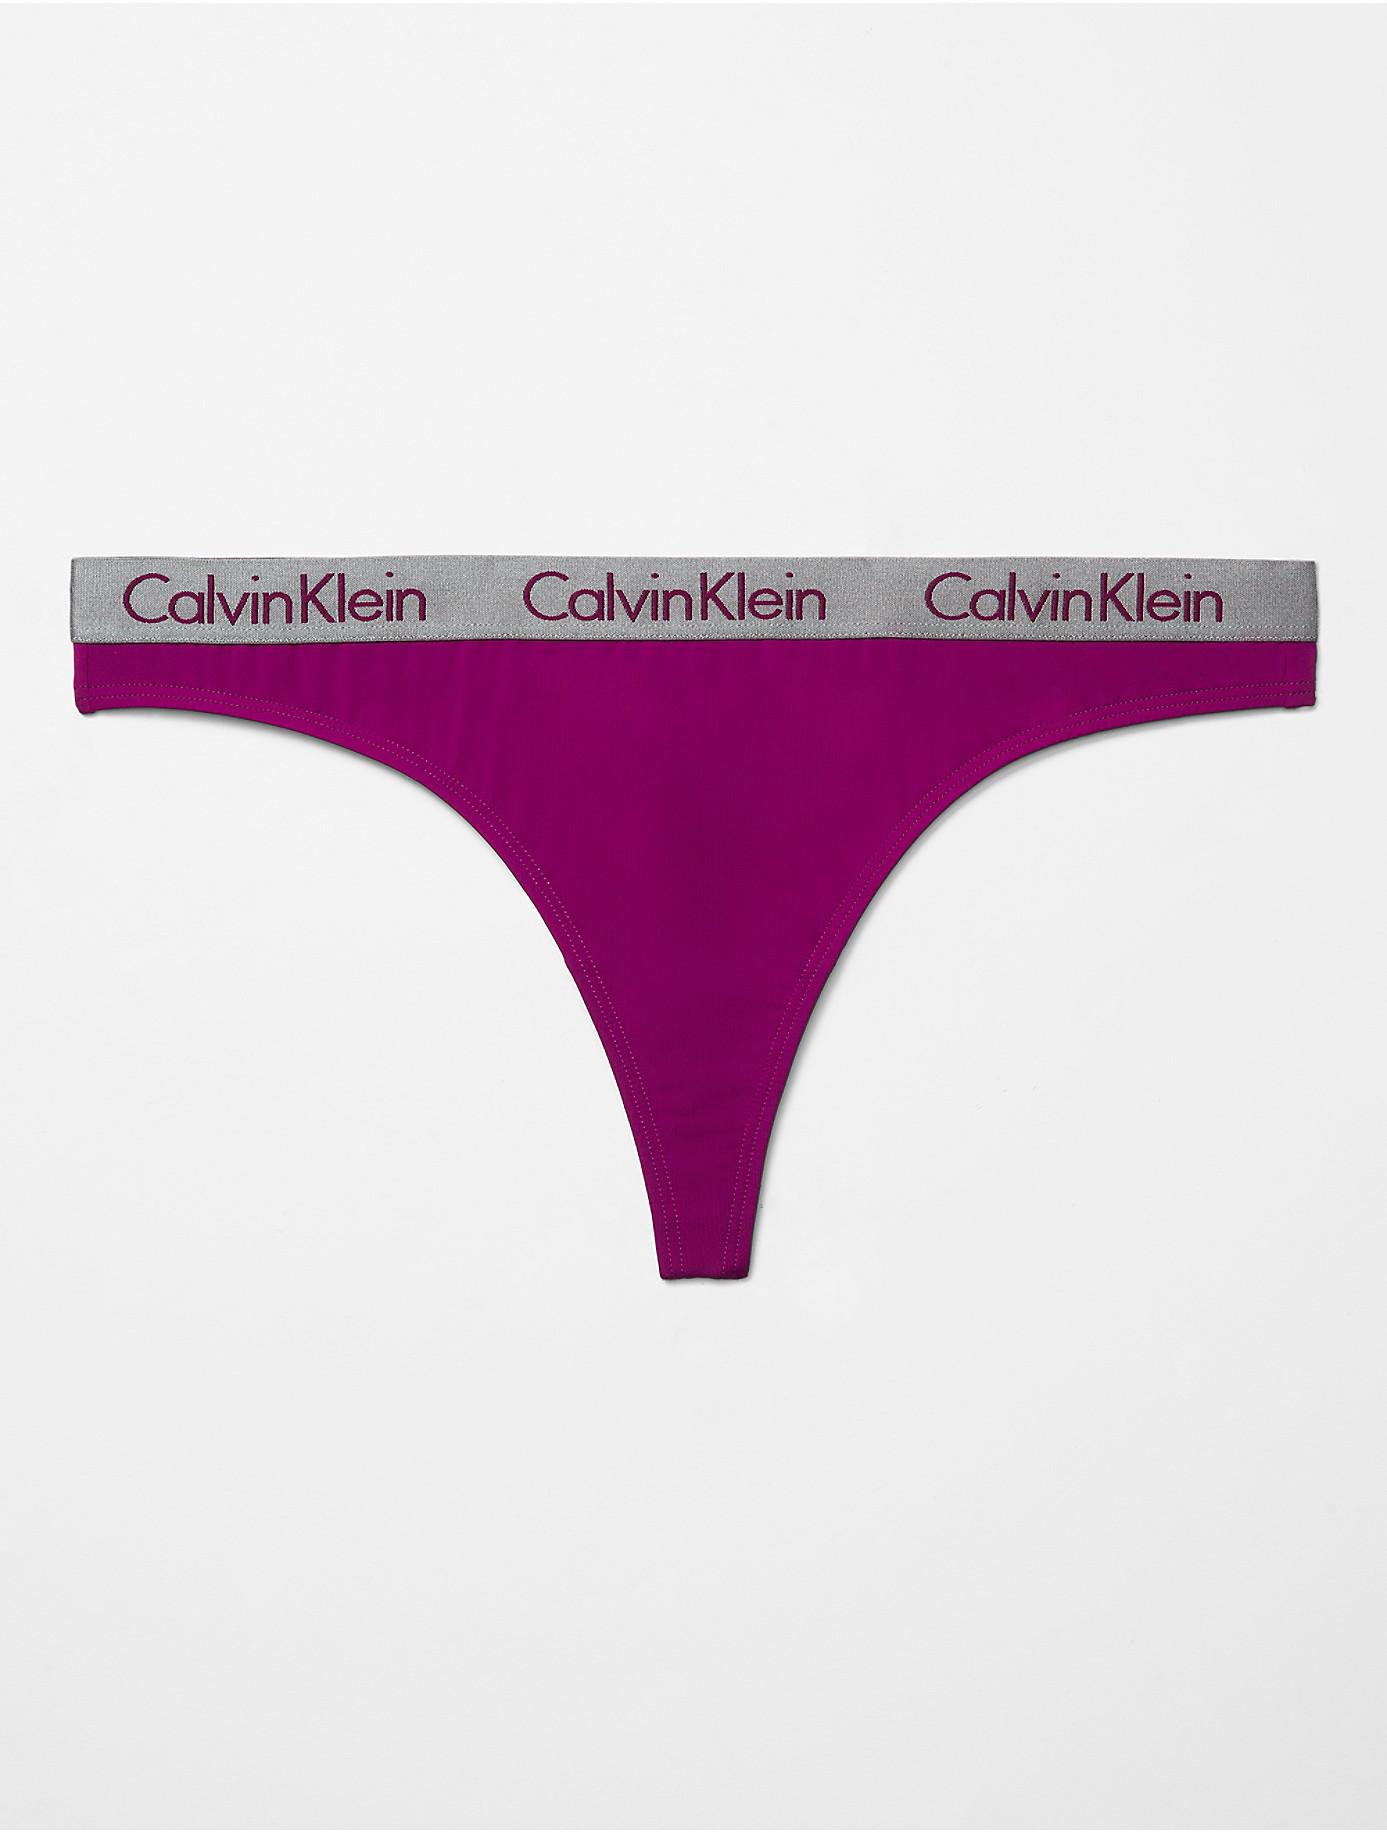 CALVIN KLEIN - Women's rubber logo thong 